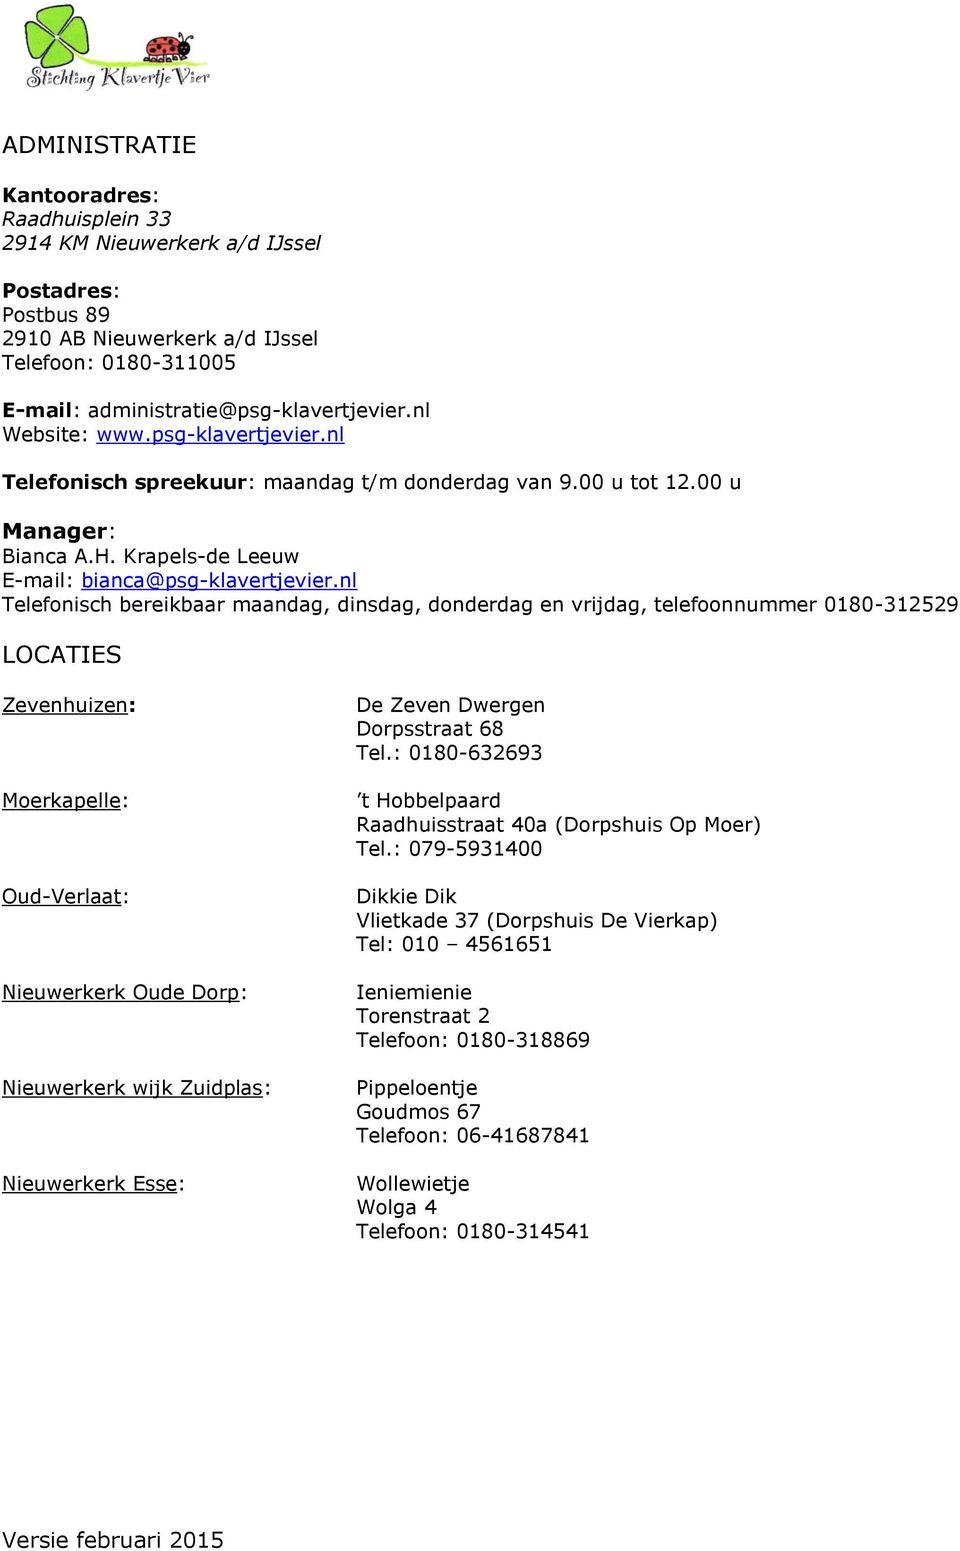 nl Telefonisch bereikbaar maandag, dinsdag, donderdag en vrijdag, telefoonnummer 0180-312529 LOCATIES Zevenhuizen: Moerkapelle: Oud-Verlaat: Nieuwerkerk Oude Dorp: Nieuwerkerk wijk Zuidplas: